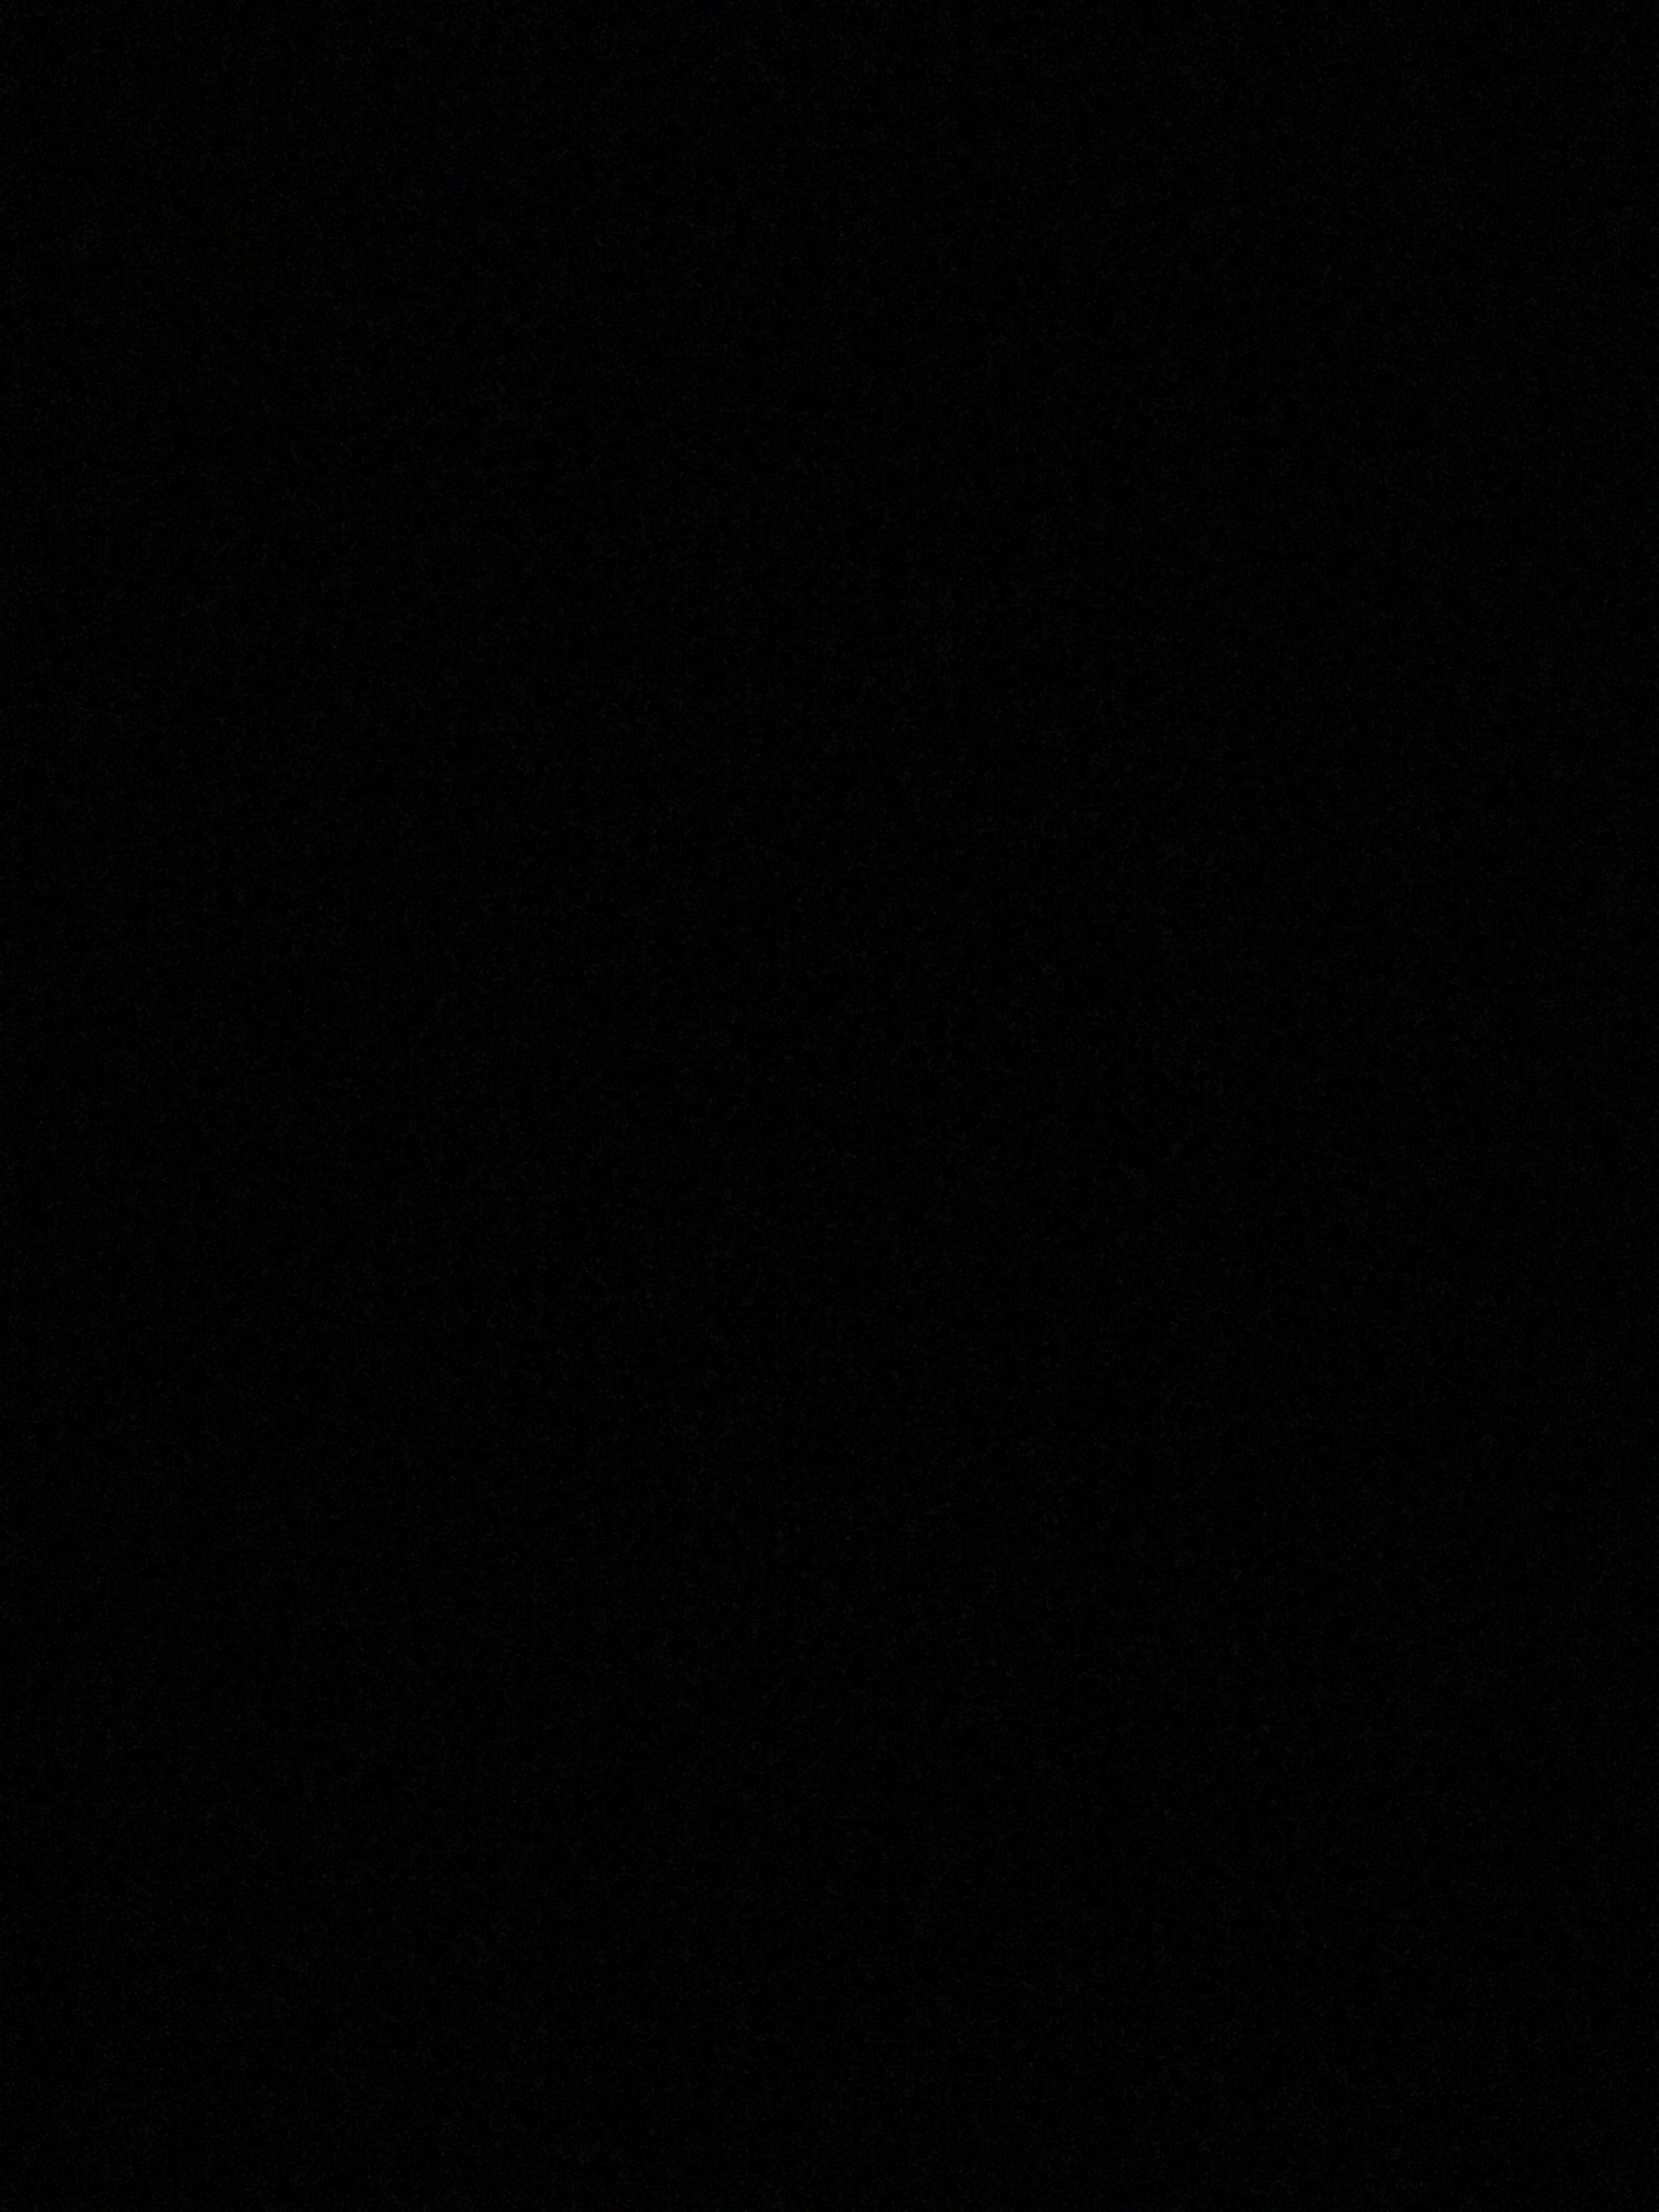 фото заставки на телефон с темным фоном